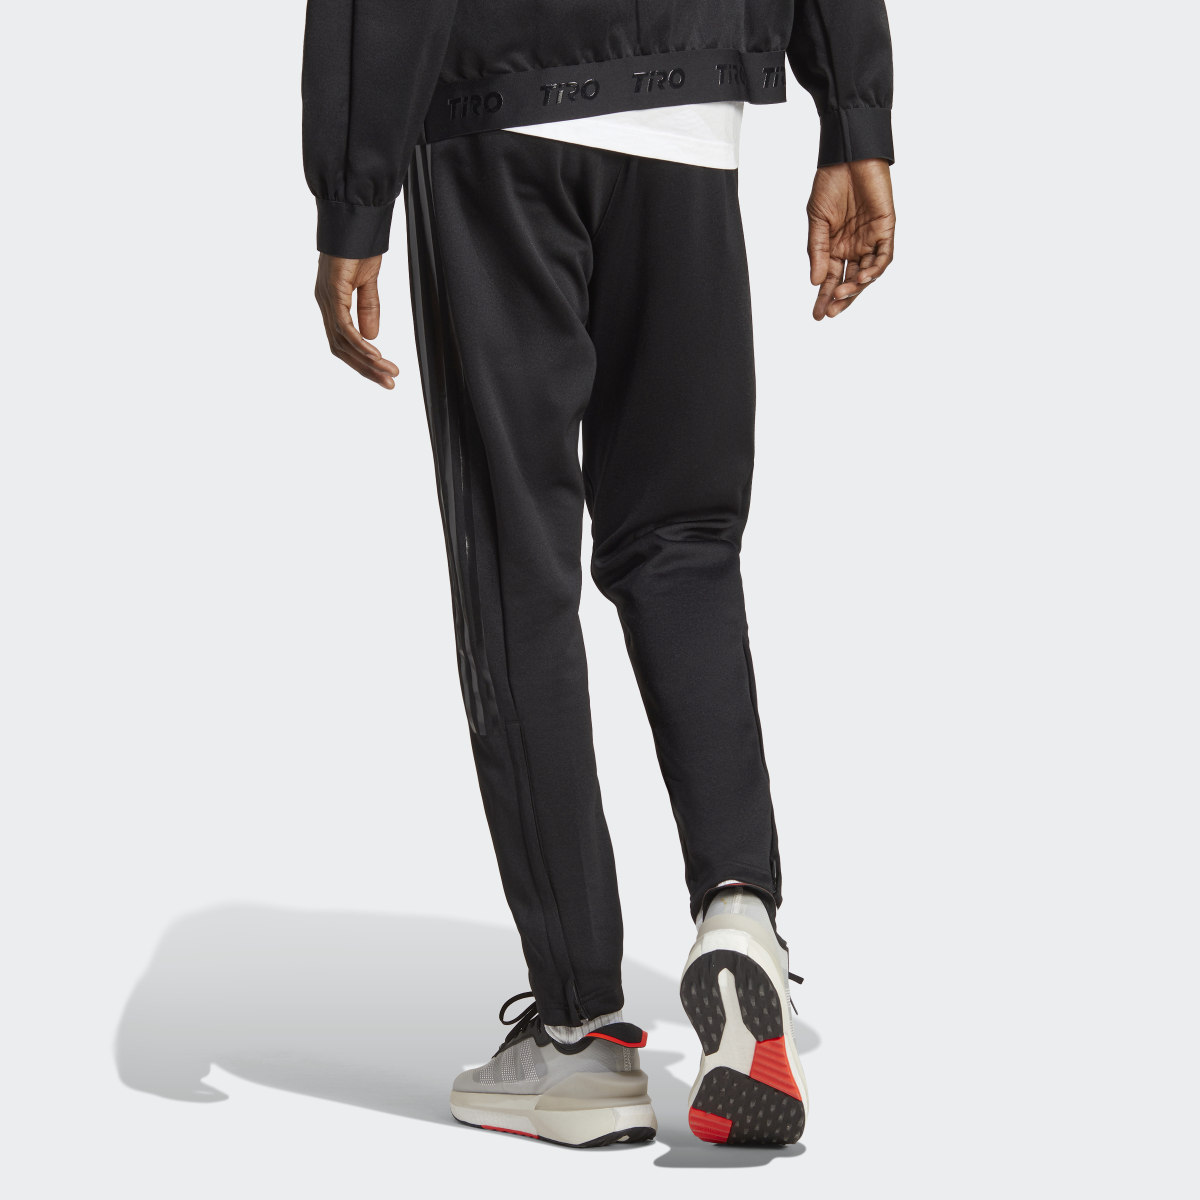 Adidas Pantalón Tiro Suit-Up Advanced. 7